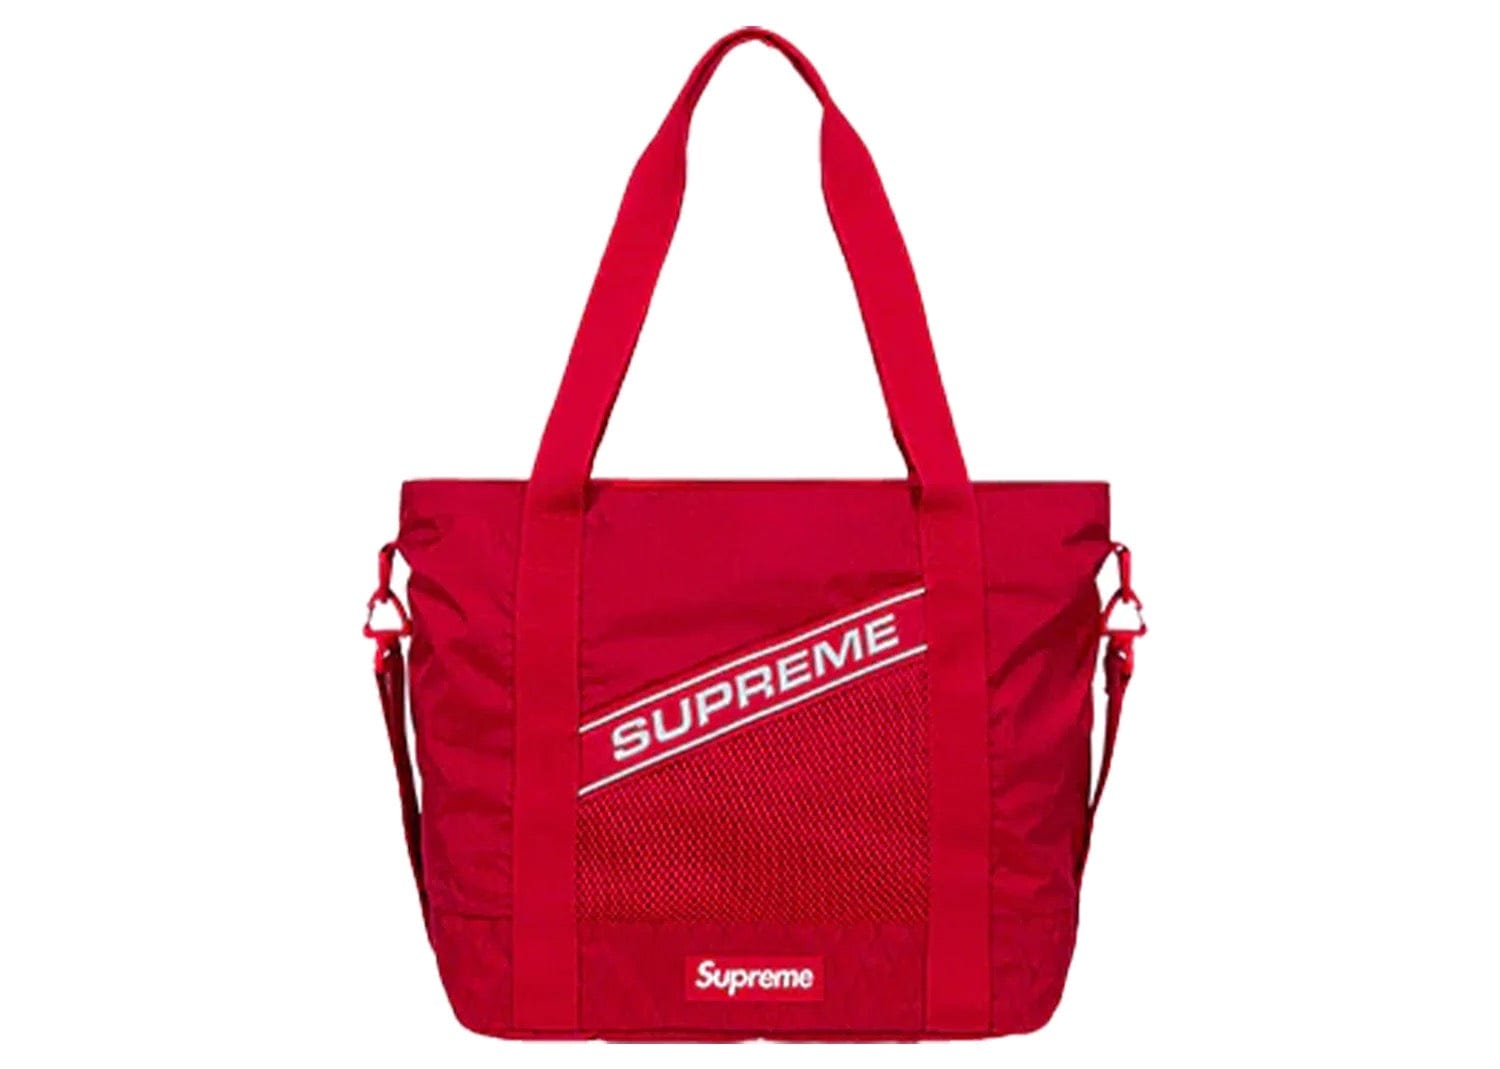 Supreme Tote Bags